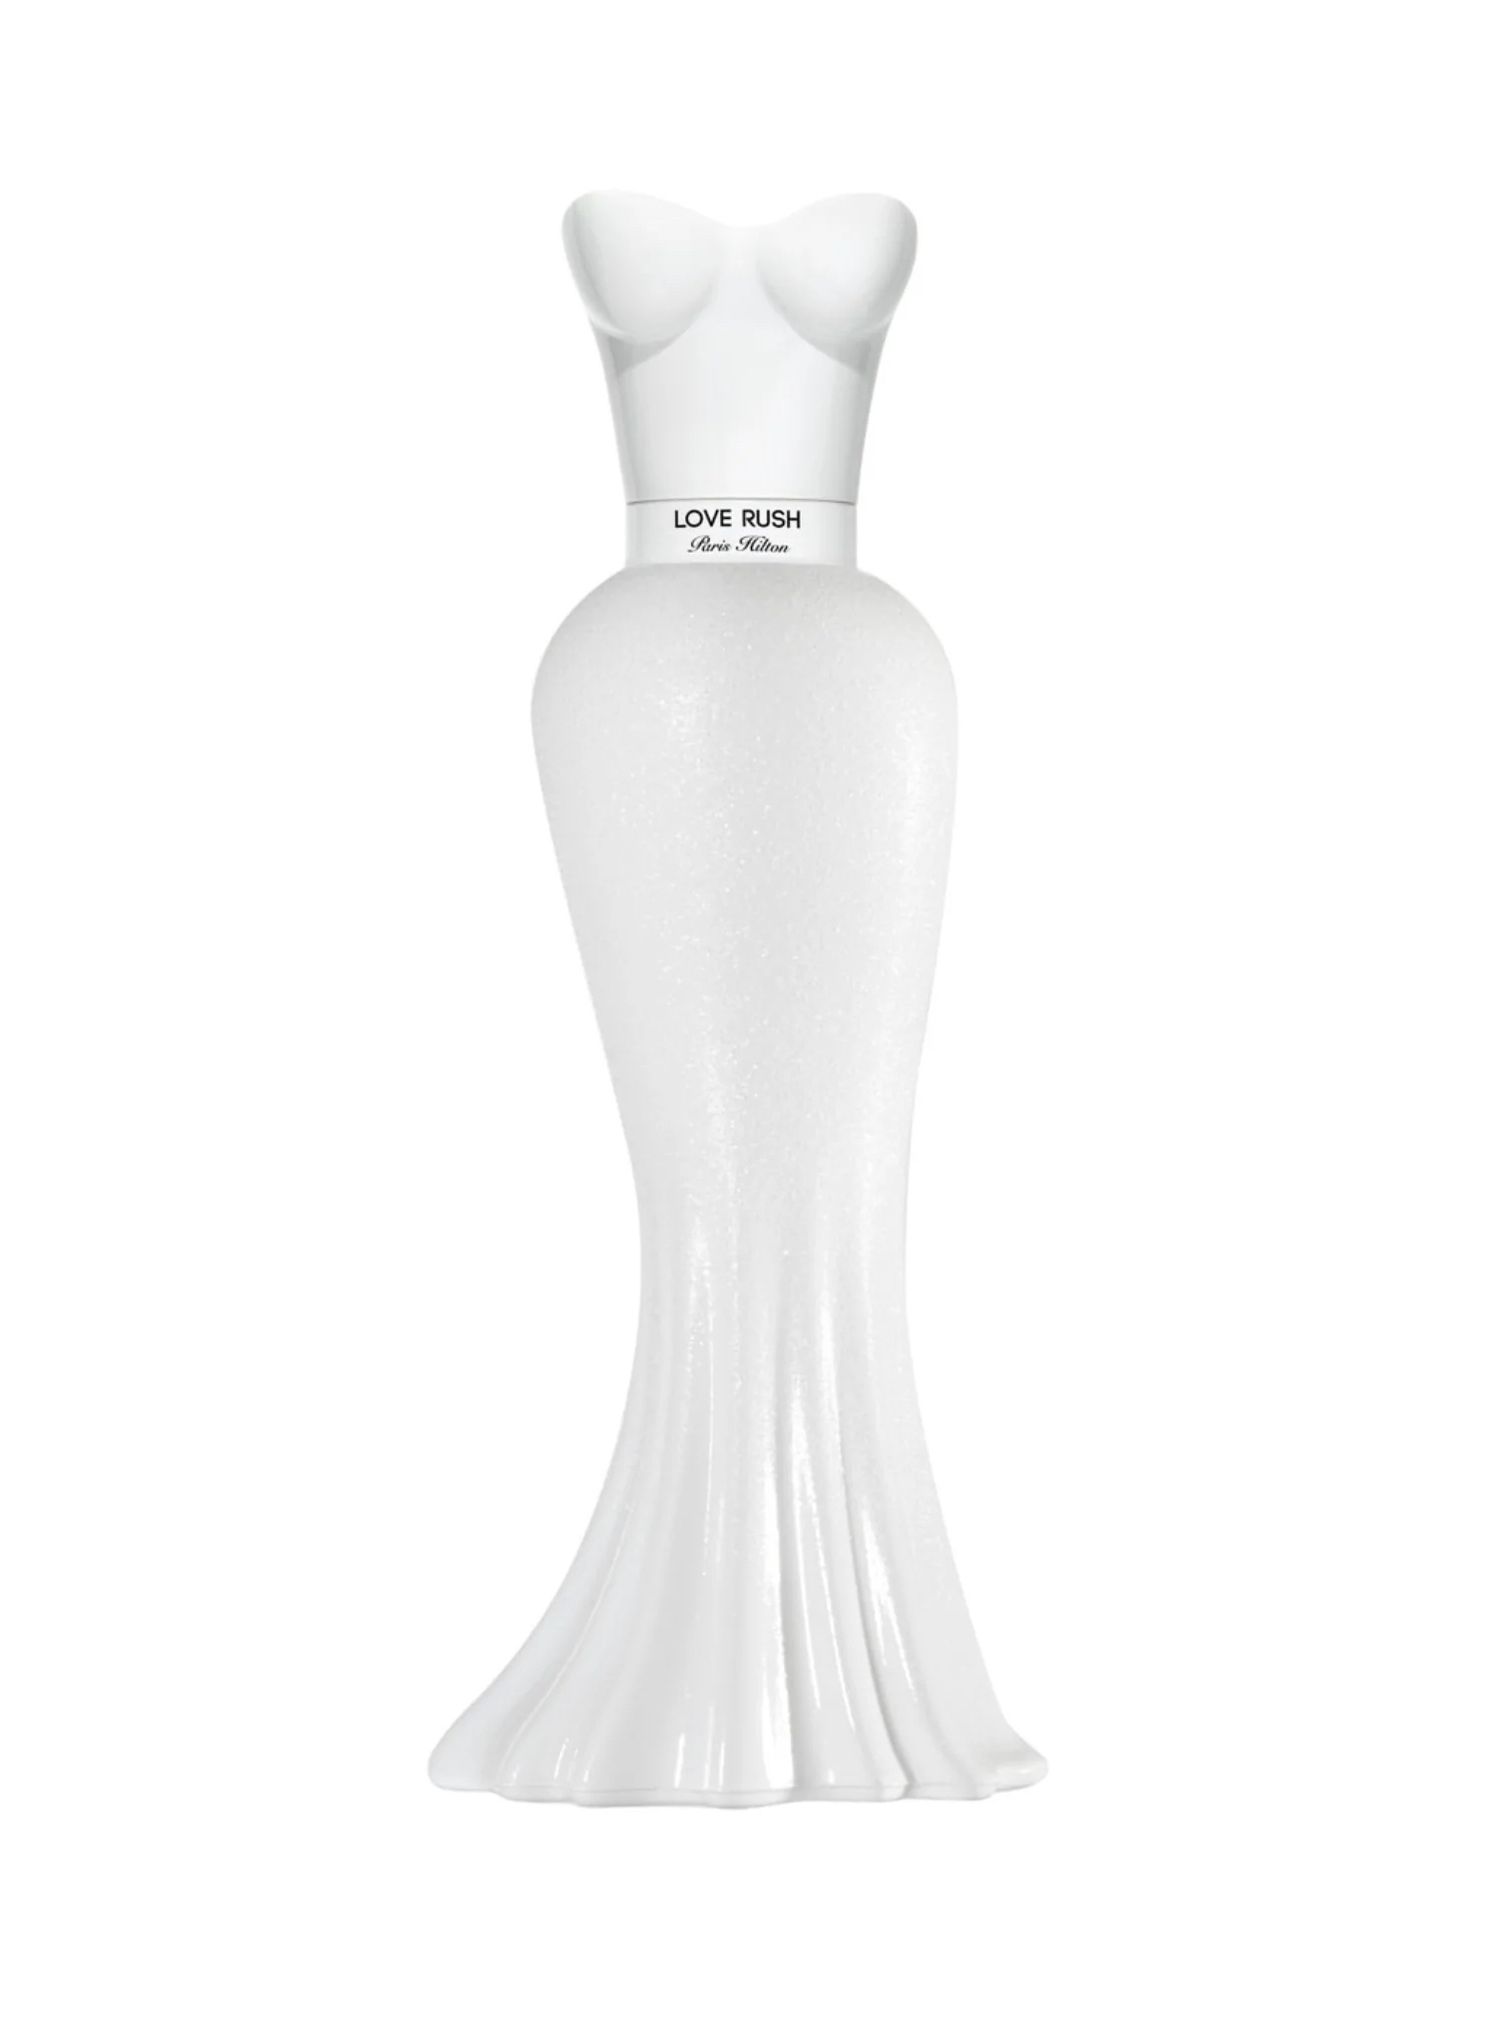 frasco de perfume no formato da silhueta corporal de Paris Hilton